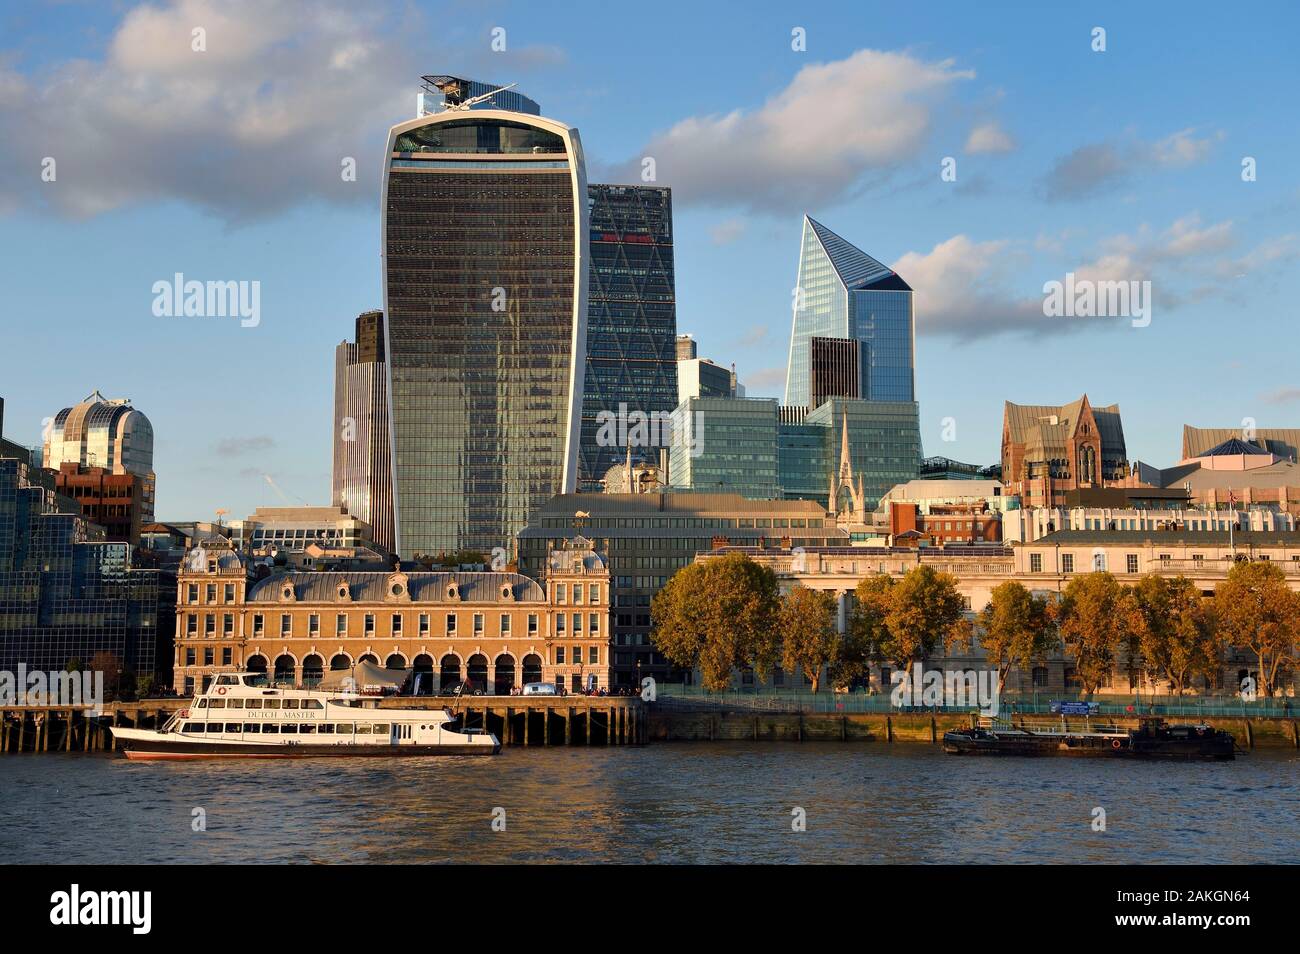 Royaume-uni, Londres, la Tamise, la ville avec ses gratte-ciel, la tour connue sous le nom de talkie Walkie conçu par l'architecte Rafael Vinoly Banque D'Images